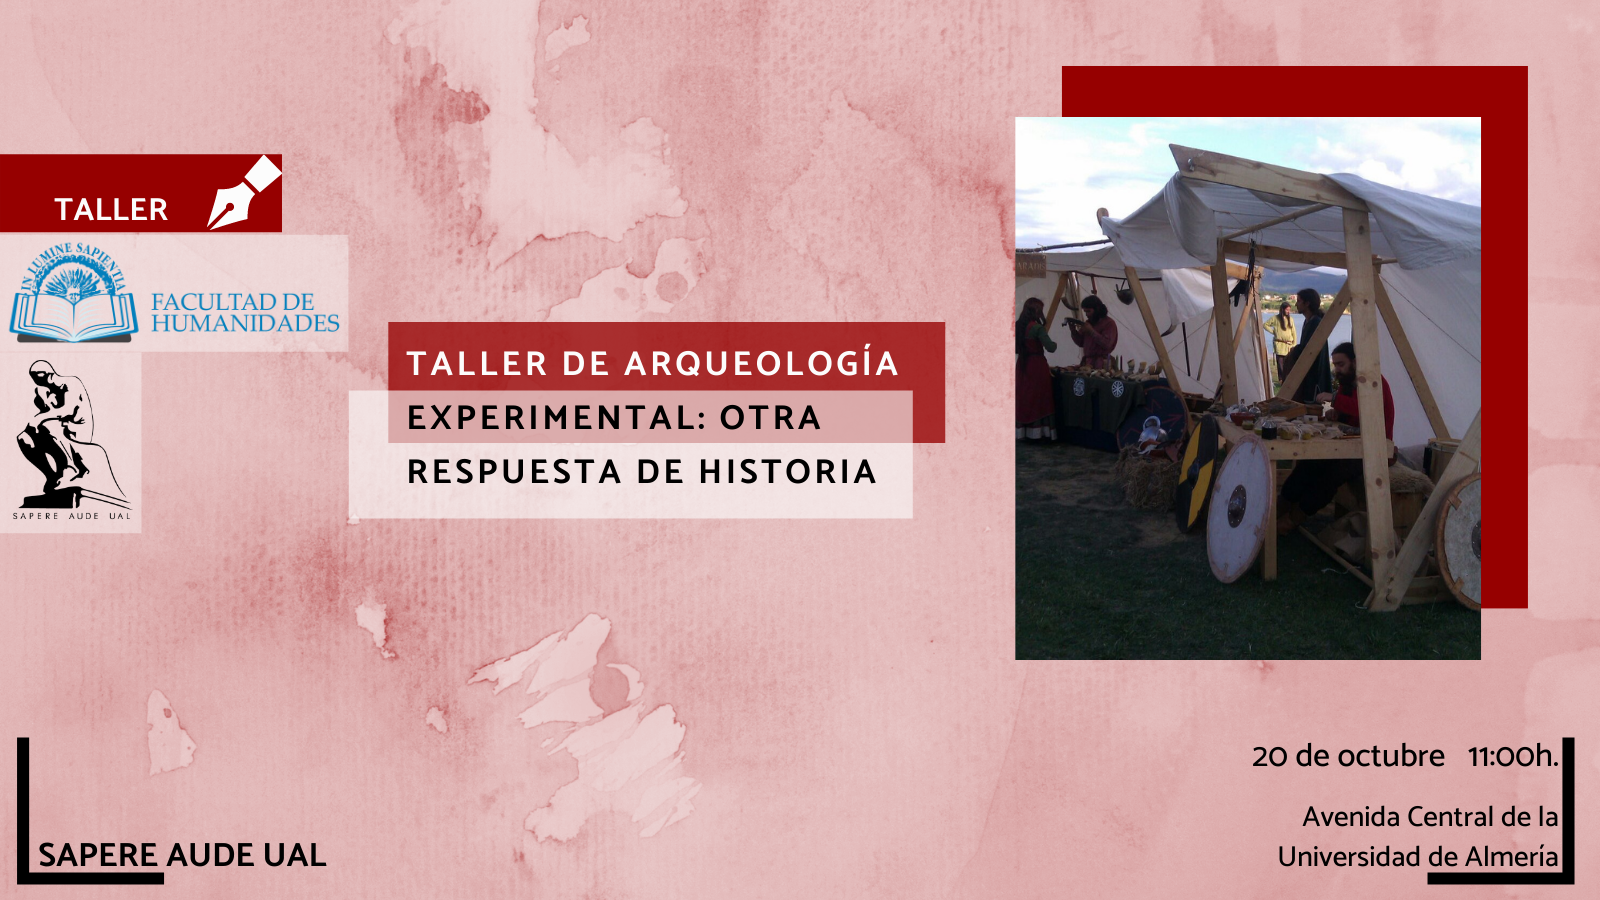 ACTIVIDAD FORMATIVA - TALLER DE ARQUEOLOGÍA EXPERIMENTAL: OTRA RESPUESTA DE HISTORIA
